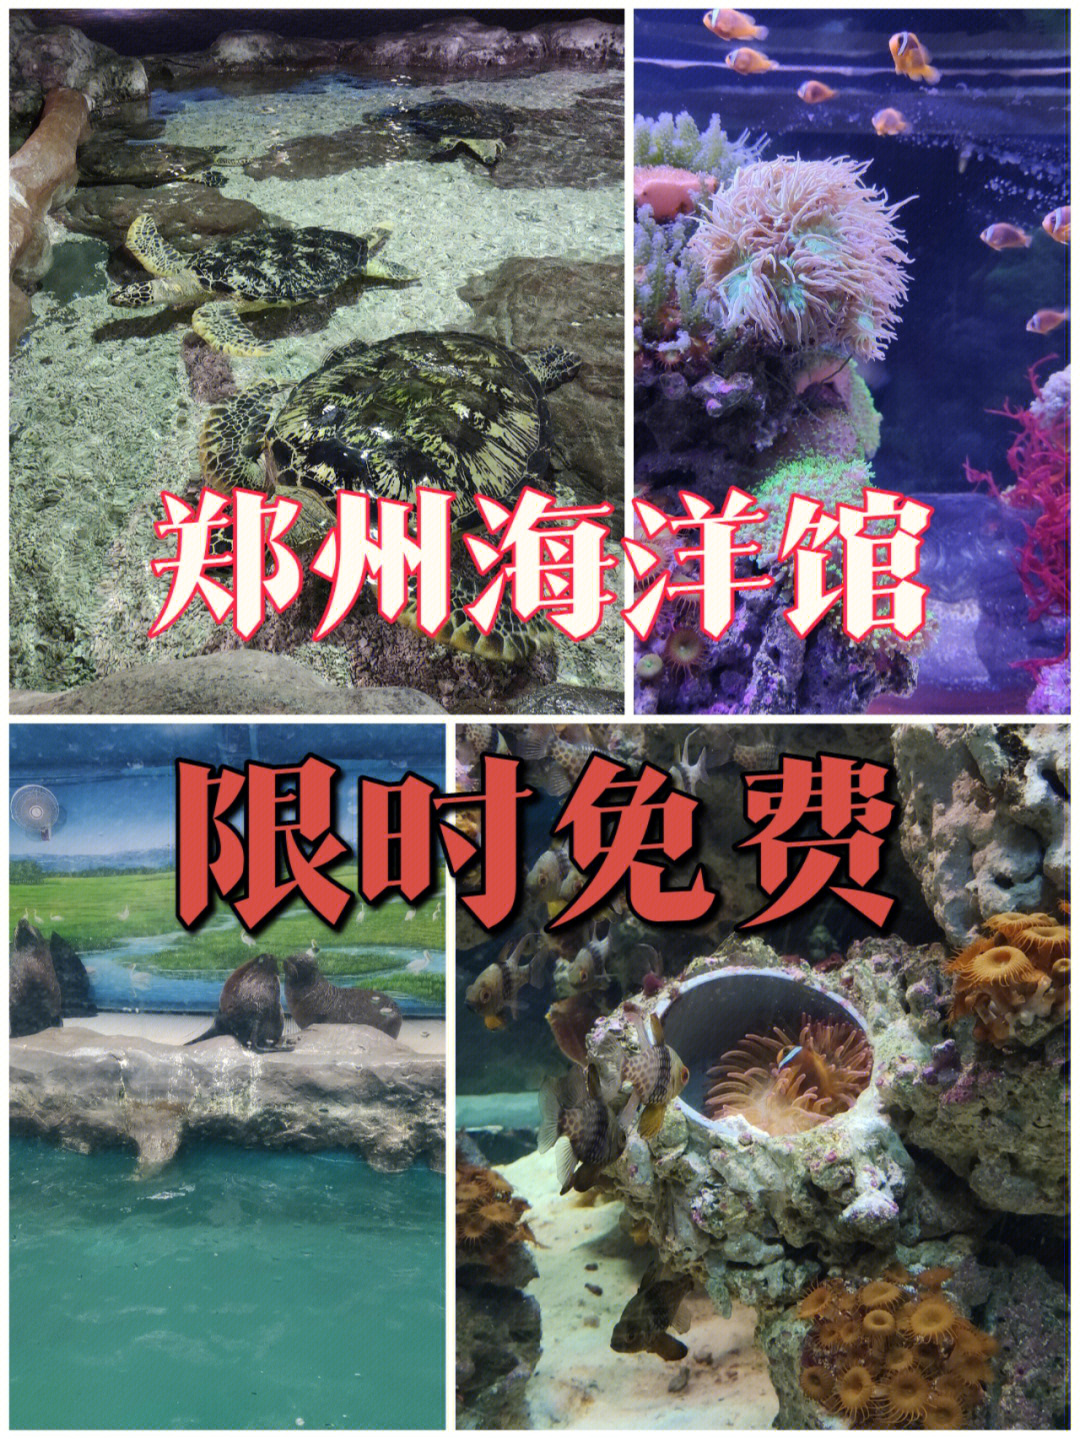 郑州海洋馆路线图片